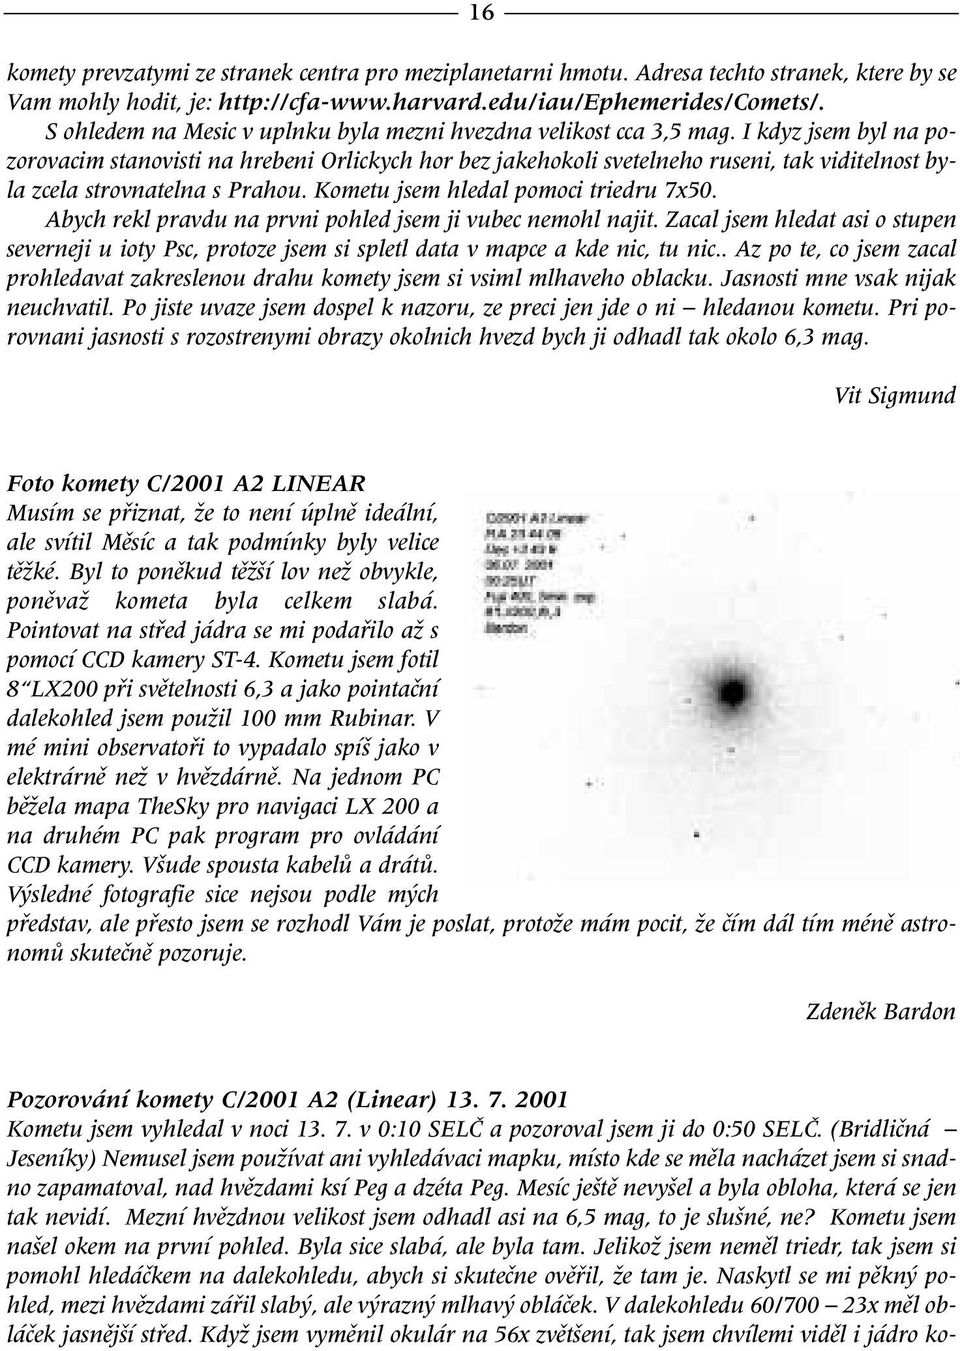 I kdyz jsem byl na pozorovacim stanovisti na hrebeni Orlickych hor bez jakehokoli svetelneho ruseni, tak viditelnost byla zcela strovnatelna s Prahou. Kometu jsem hledal pomoci triedru 7x50.